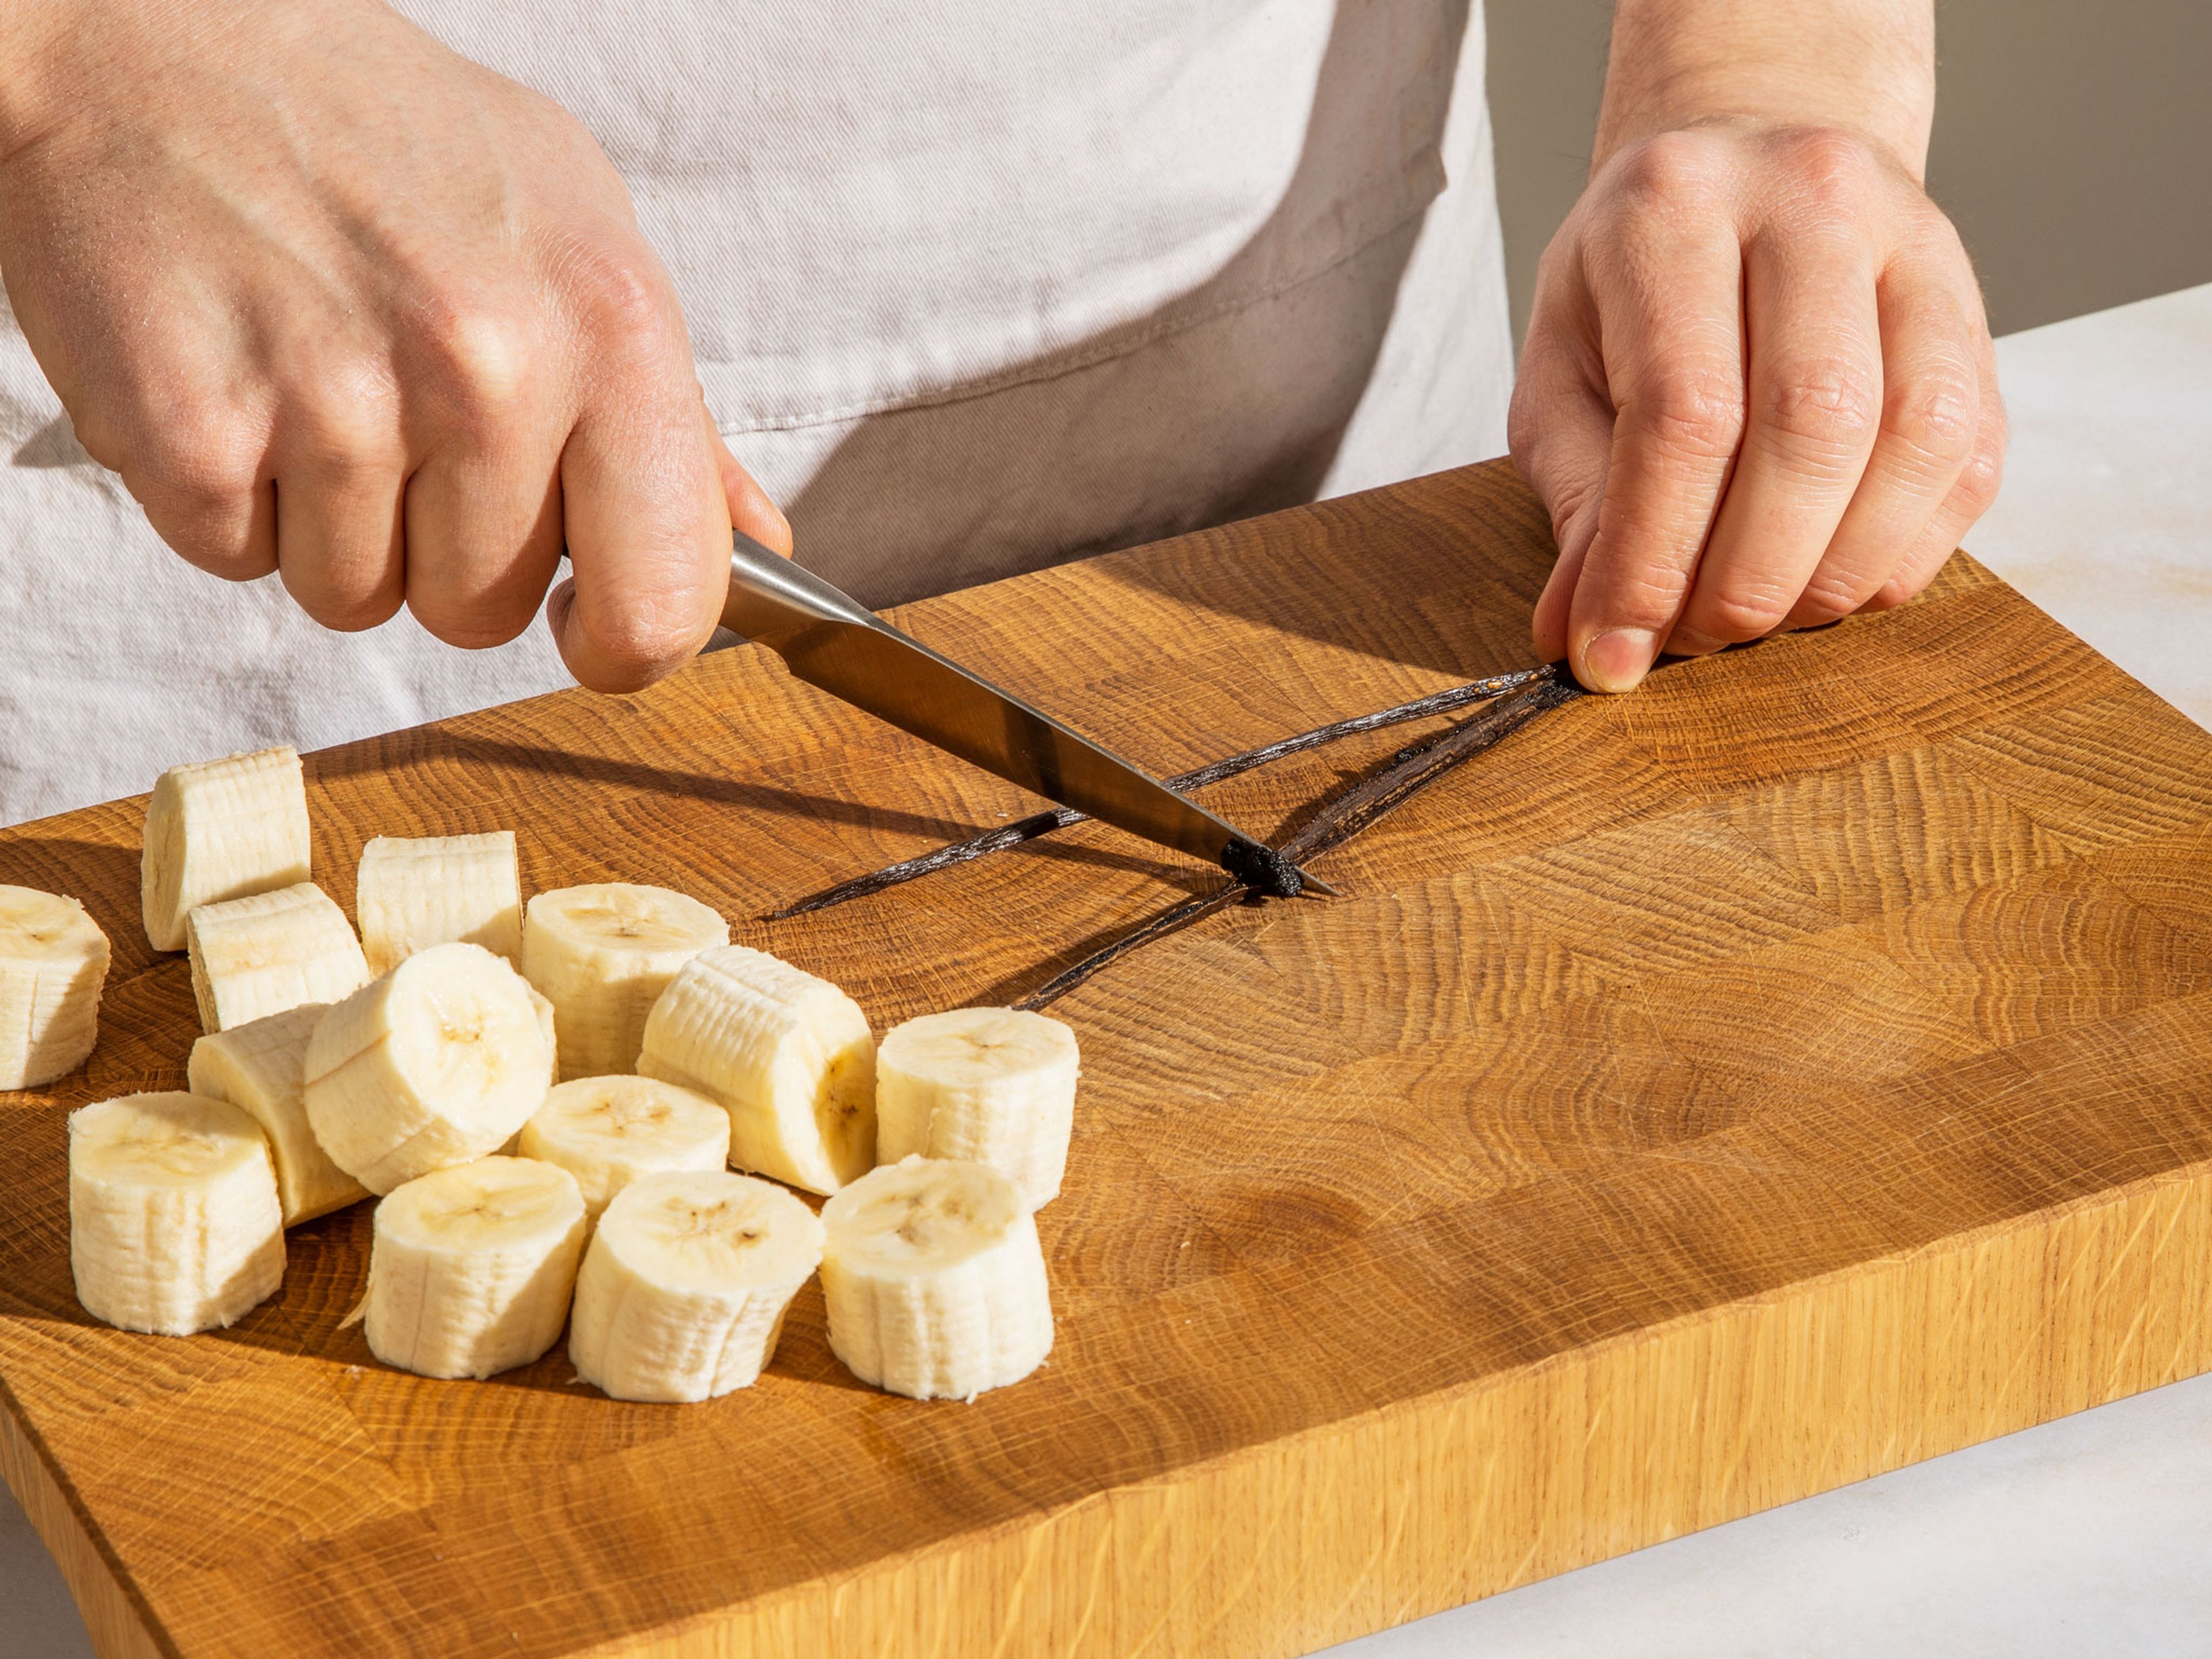 Die Bananen schälen und in kleinere Stücke schneiden. Die Vanilleschote der Länge nach aufschneiden und mit der flachen Seite eines Messers das Vanillemark herauskratzen.